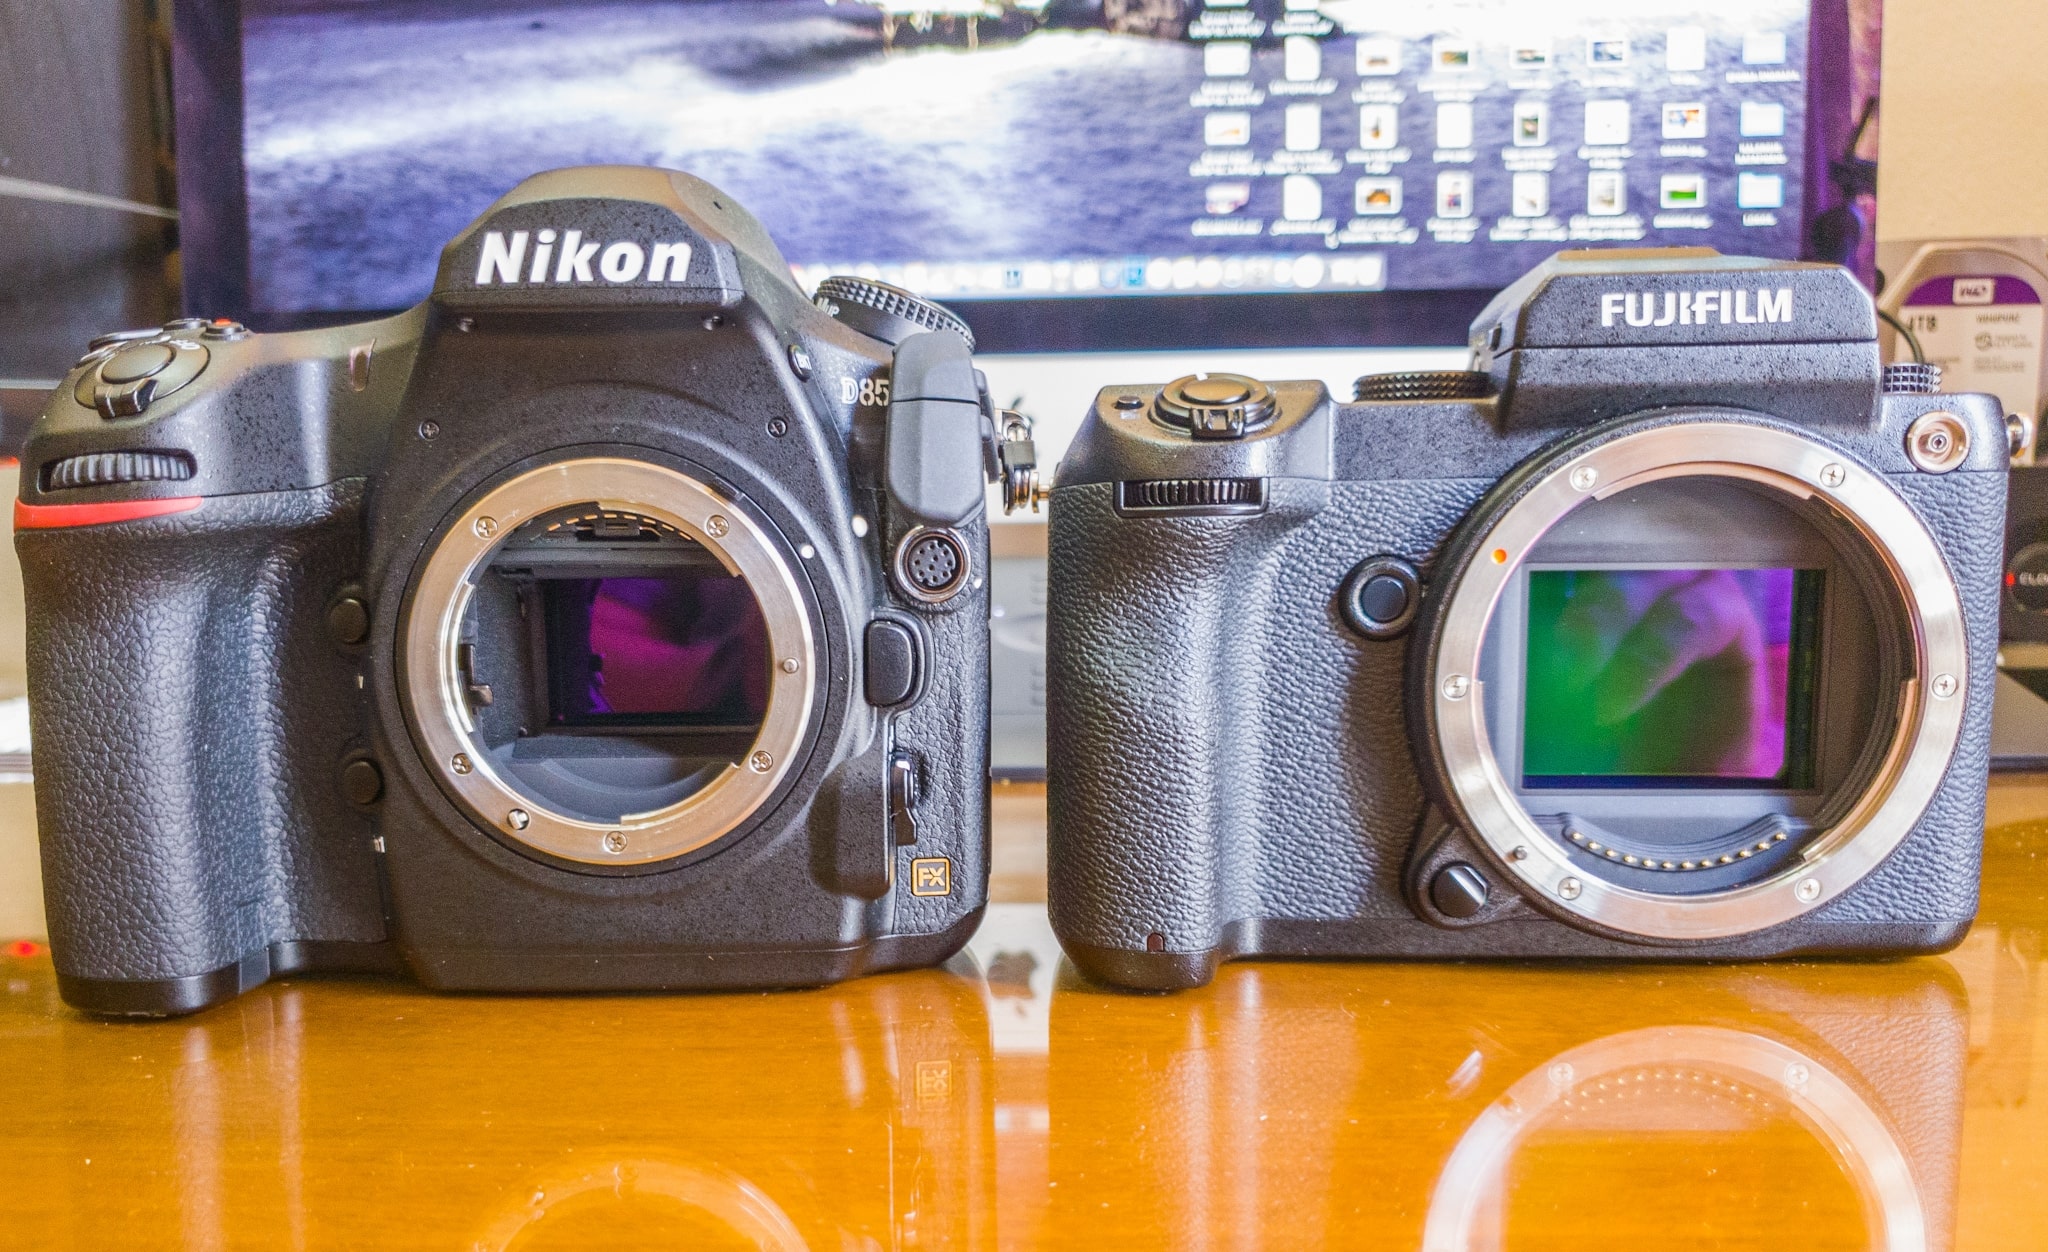 sensor size Nikon D850 vs Fujifilm gfx50s